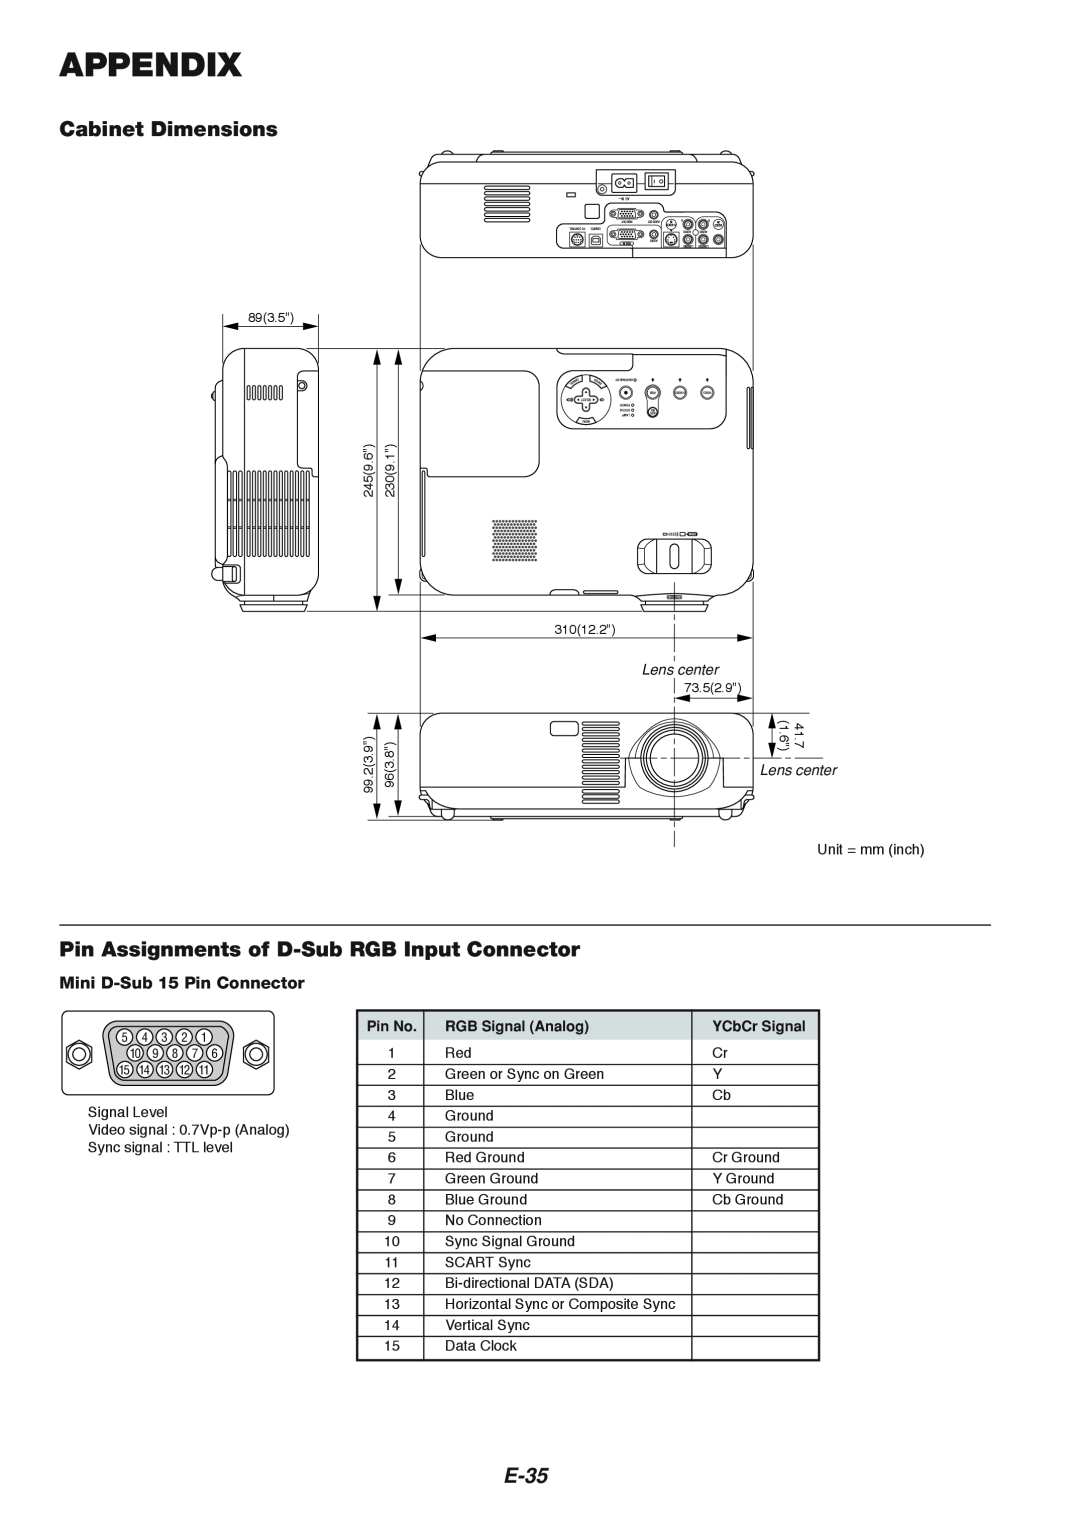 NEC VT460K Appendix, Cabinet Dimensions, Pin Assignments of D-Sub RGB Input Connector, E-35, Mini D-Sub 15 Pin Connector 